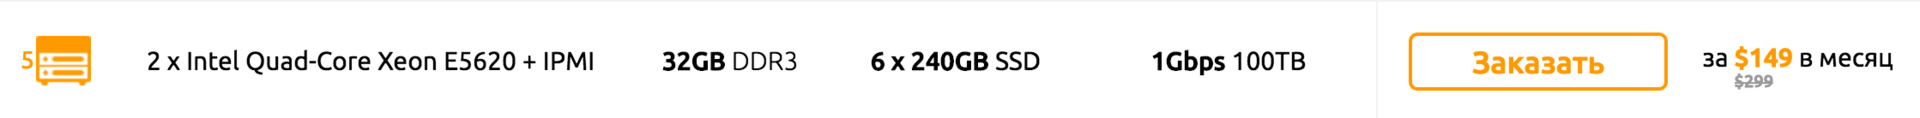 Cерверы с «устаревшими» CPU или более высокая цена? Мы нашли компромисс! 2 x E5620 - 32GB DDR3 - 6 x 240GB SSD - 1Gbps? - 3